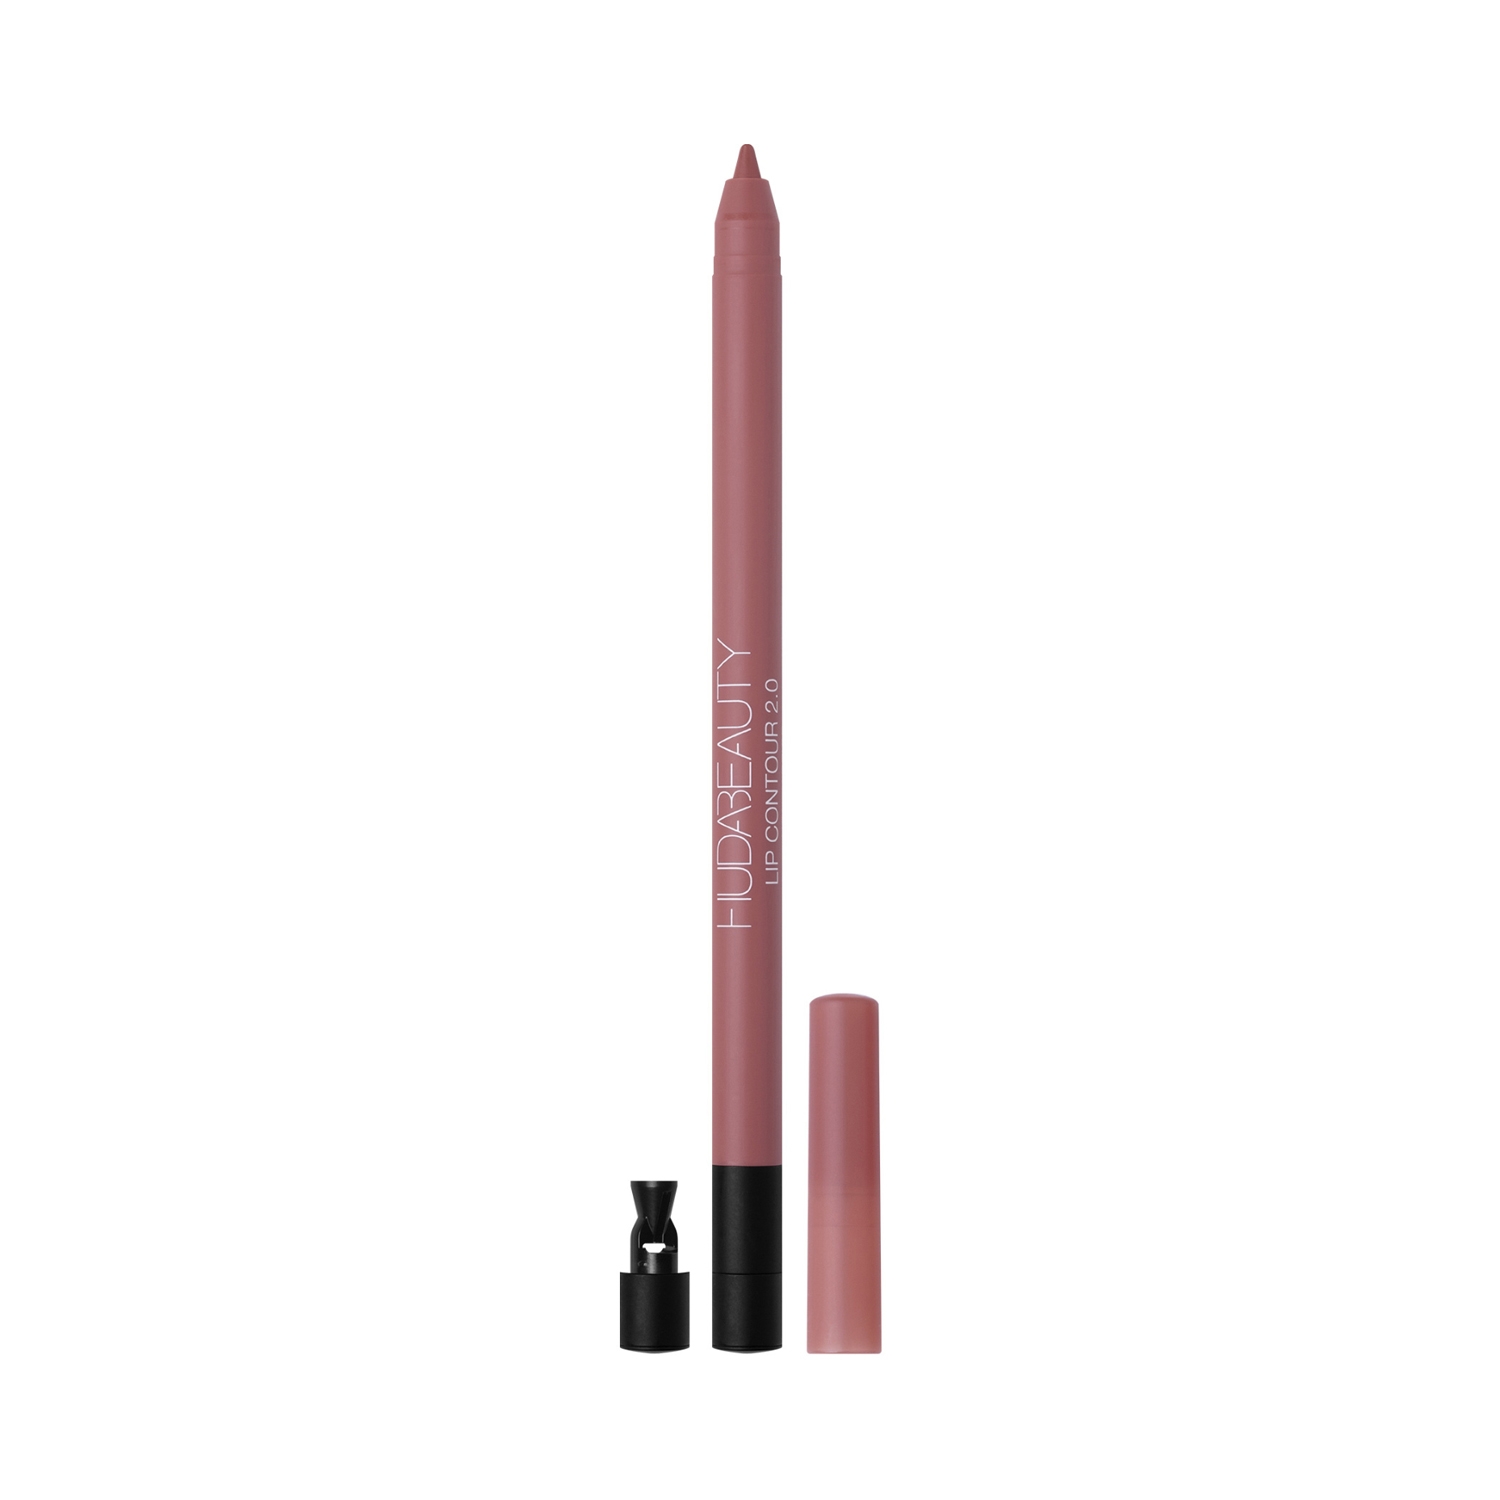 Huda Beauty | Huda Beauty Lip Contour 2.0 Automatic Matte Lip Pencil - Muted Pink (0.5g)